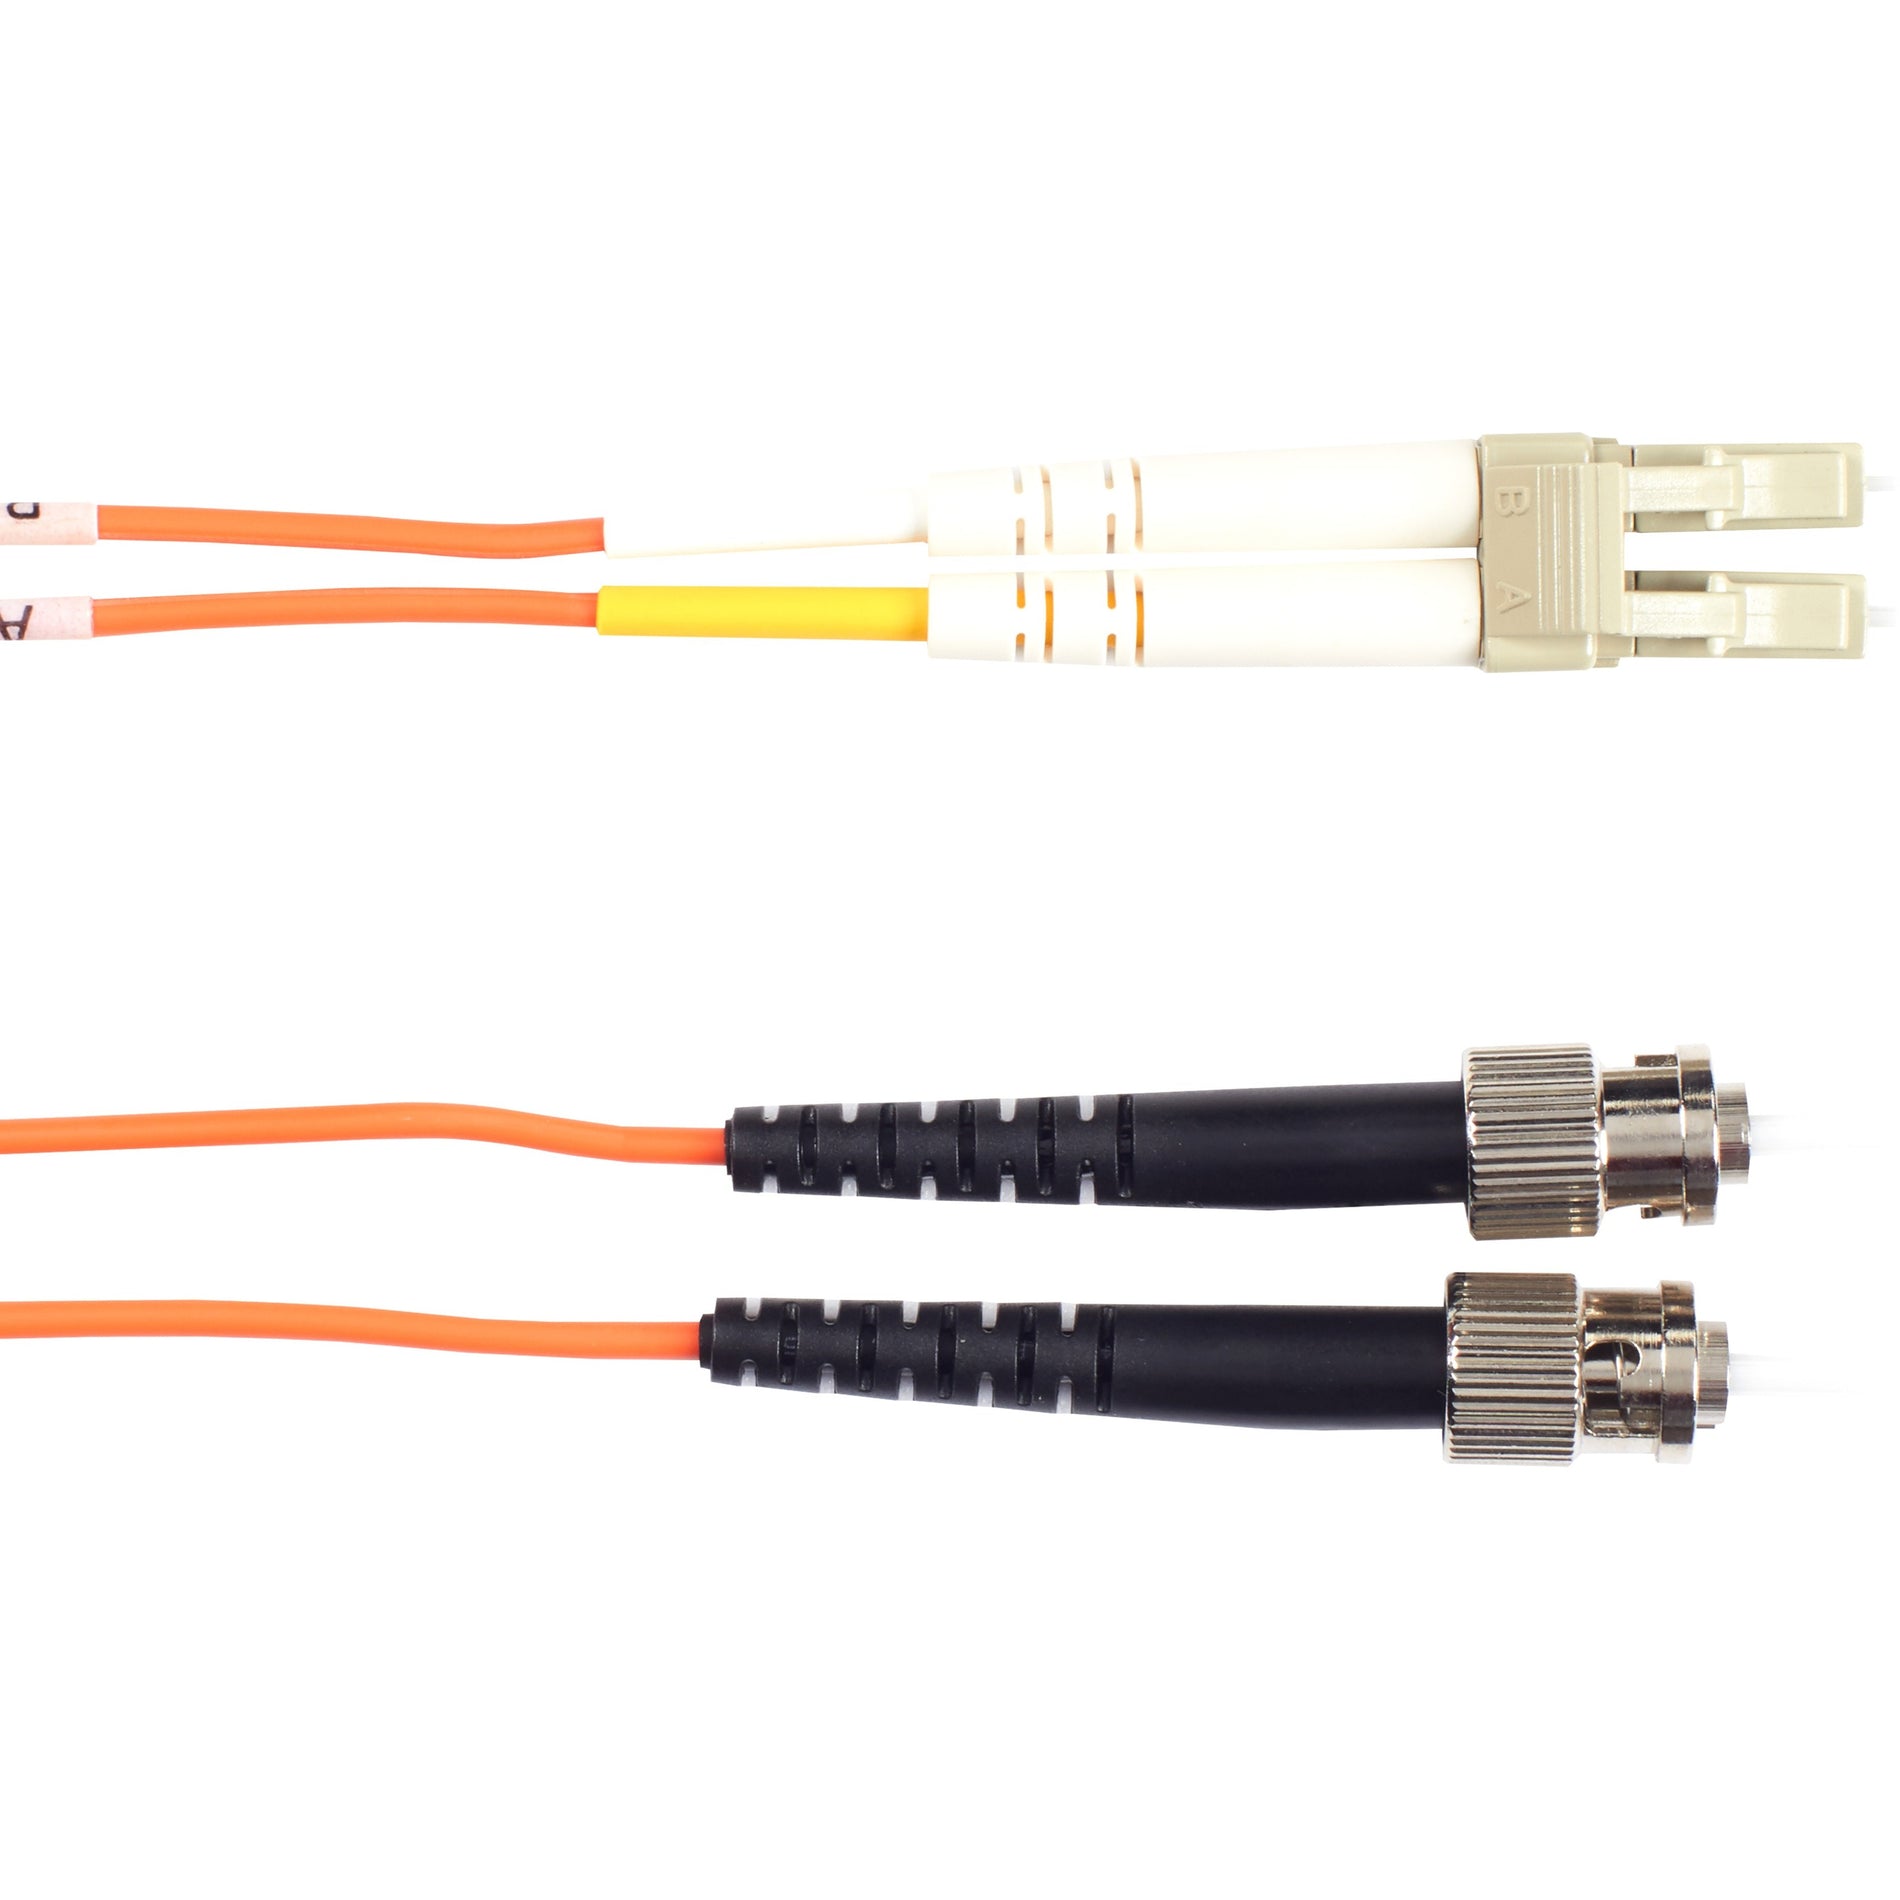 Black Box EFN110-030M-STLC Fiber Optic Duplex Patch Network Cable, Multi-mode, 98.40 ft, ST to LC Male Connectors, Orange Jacket